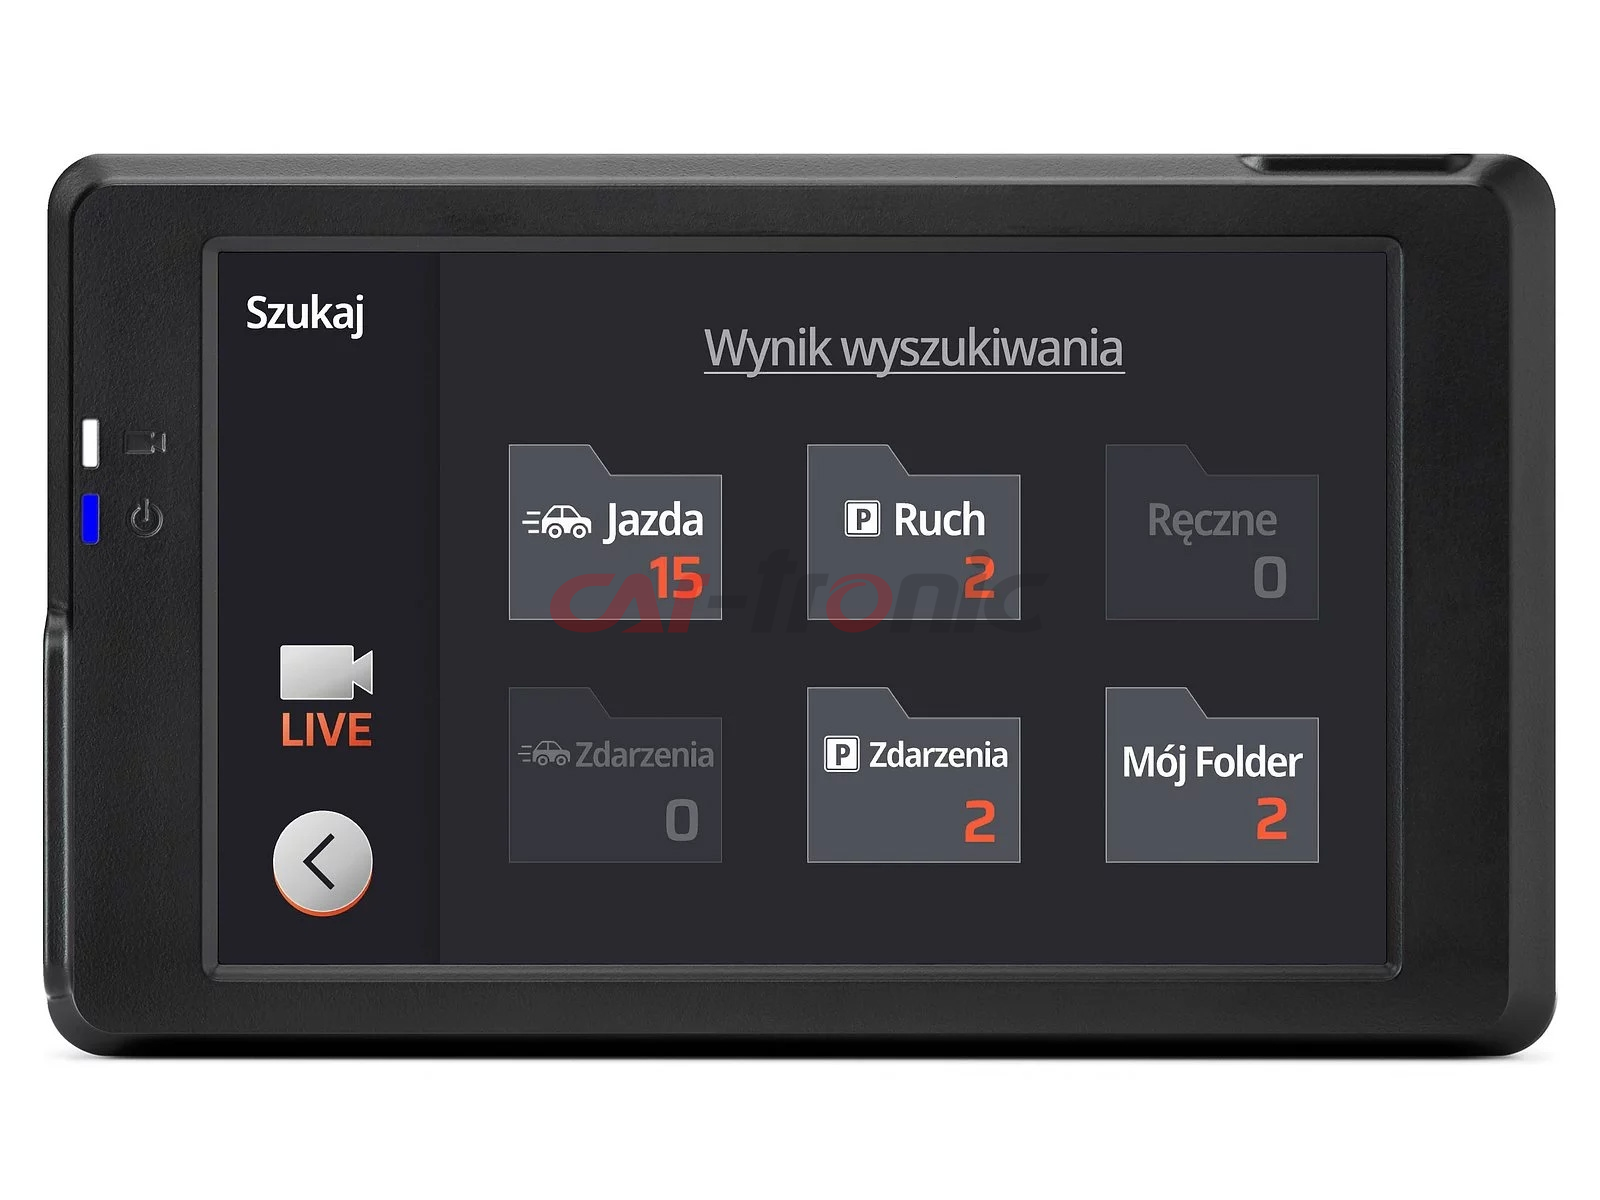 Wideorejestrator FineVu GX7000 - rejestrator QHD+FHD LCD GPS radary, karta 32GB